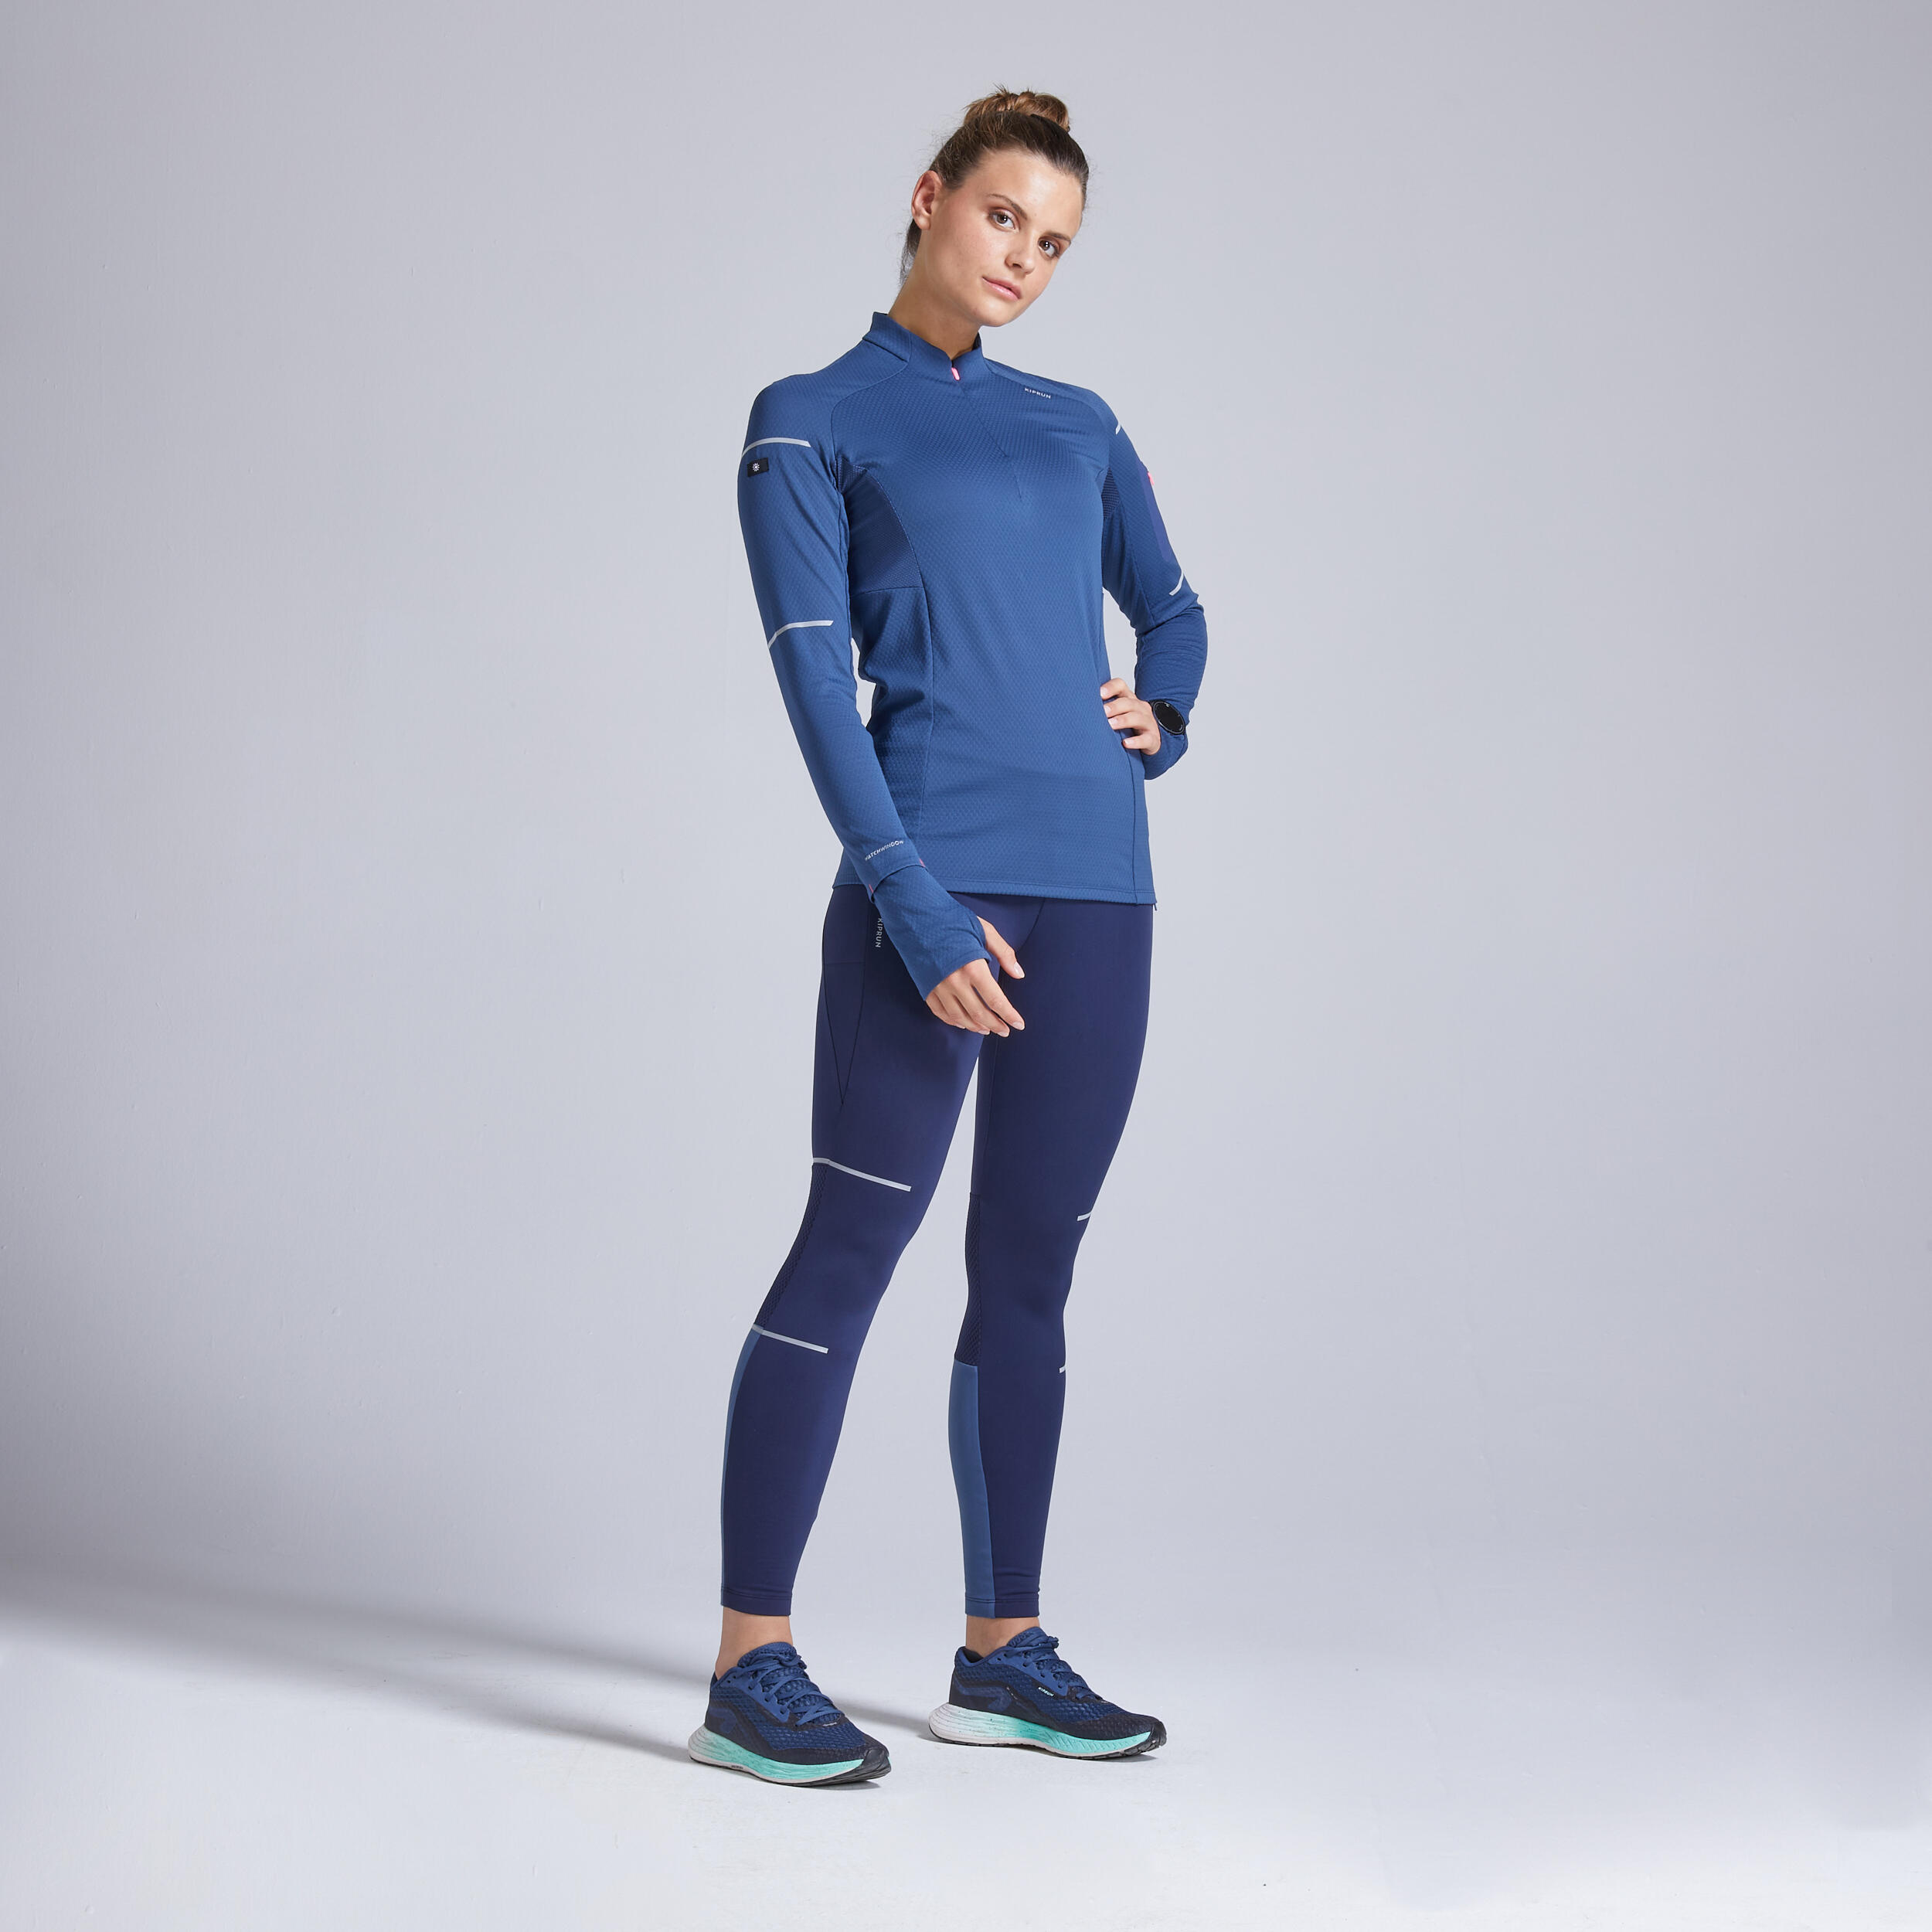 Kiprun Warm Light Women's Winter Running Long-Sleeved T-Shirt - slate blue 11/11